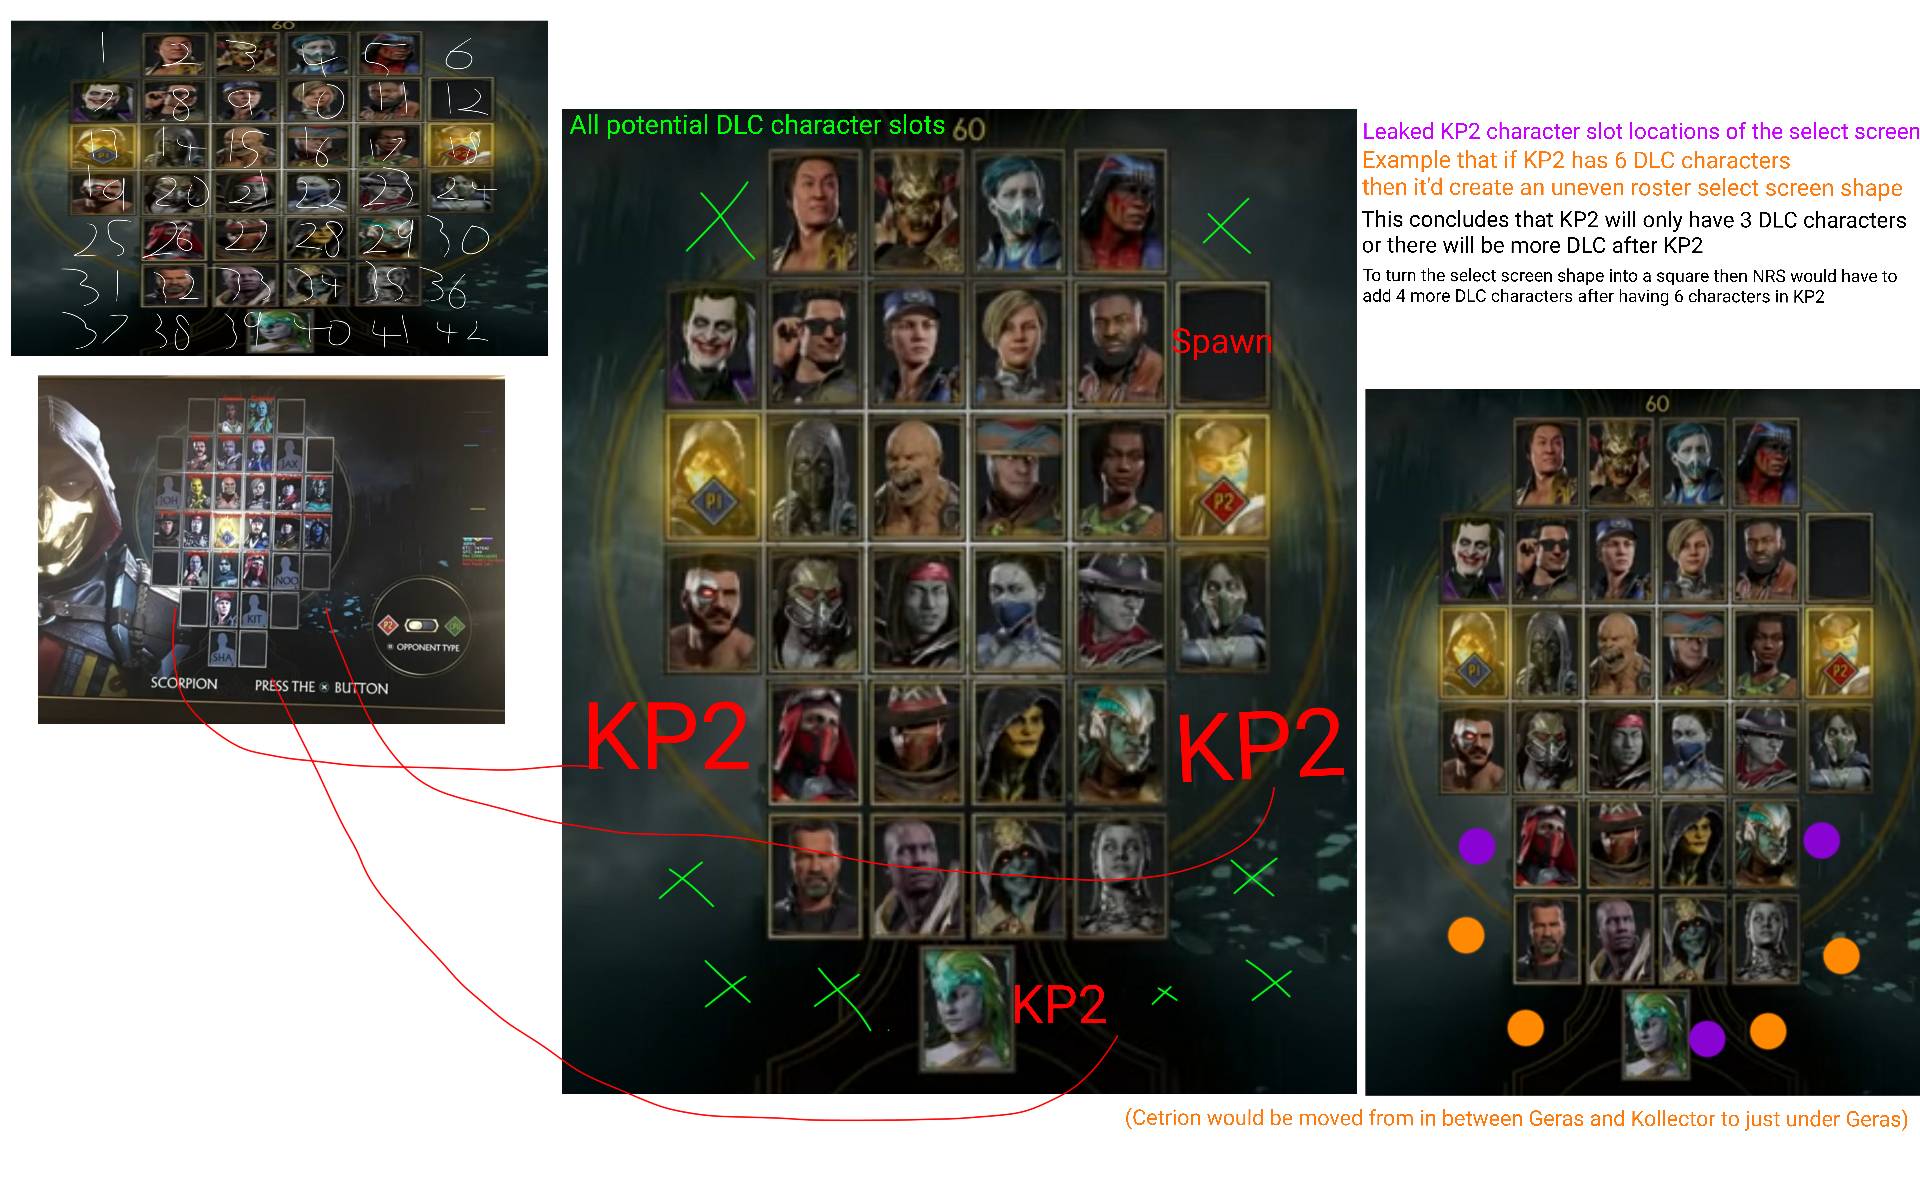 Mortal Kombat 11' Roster Size Confirmed